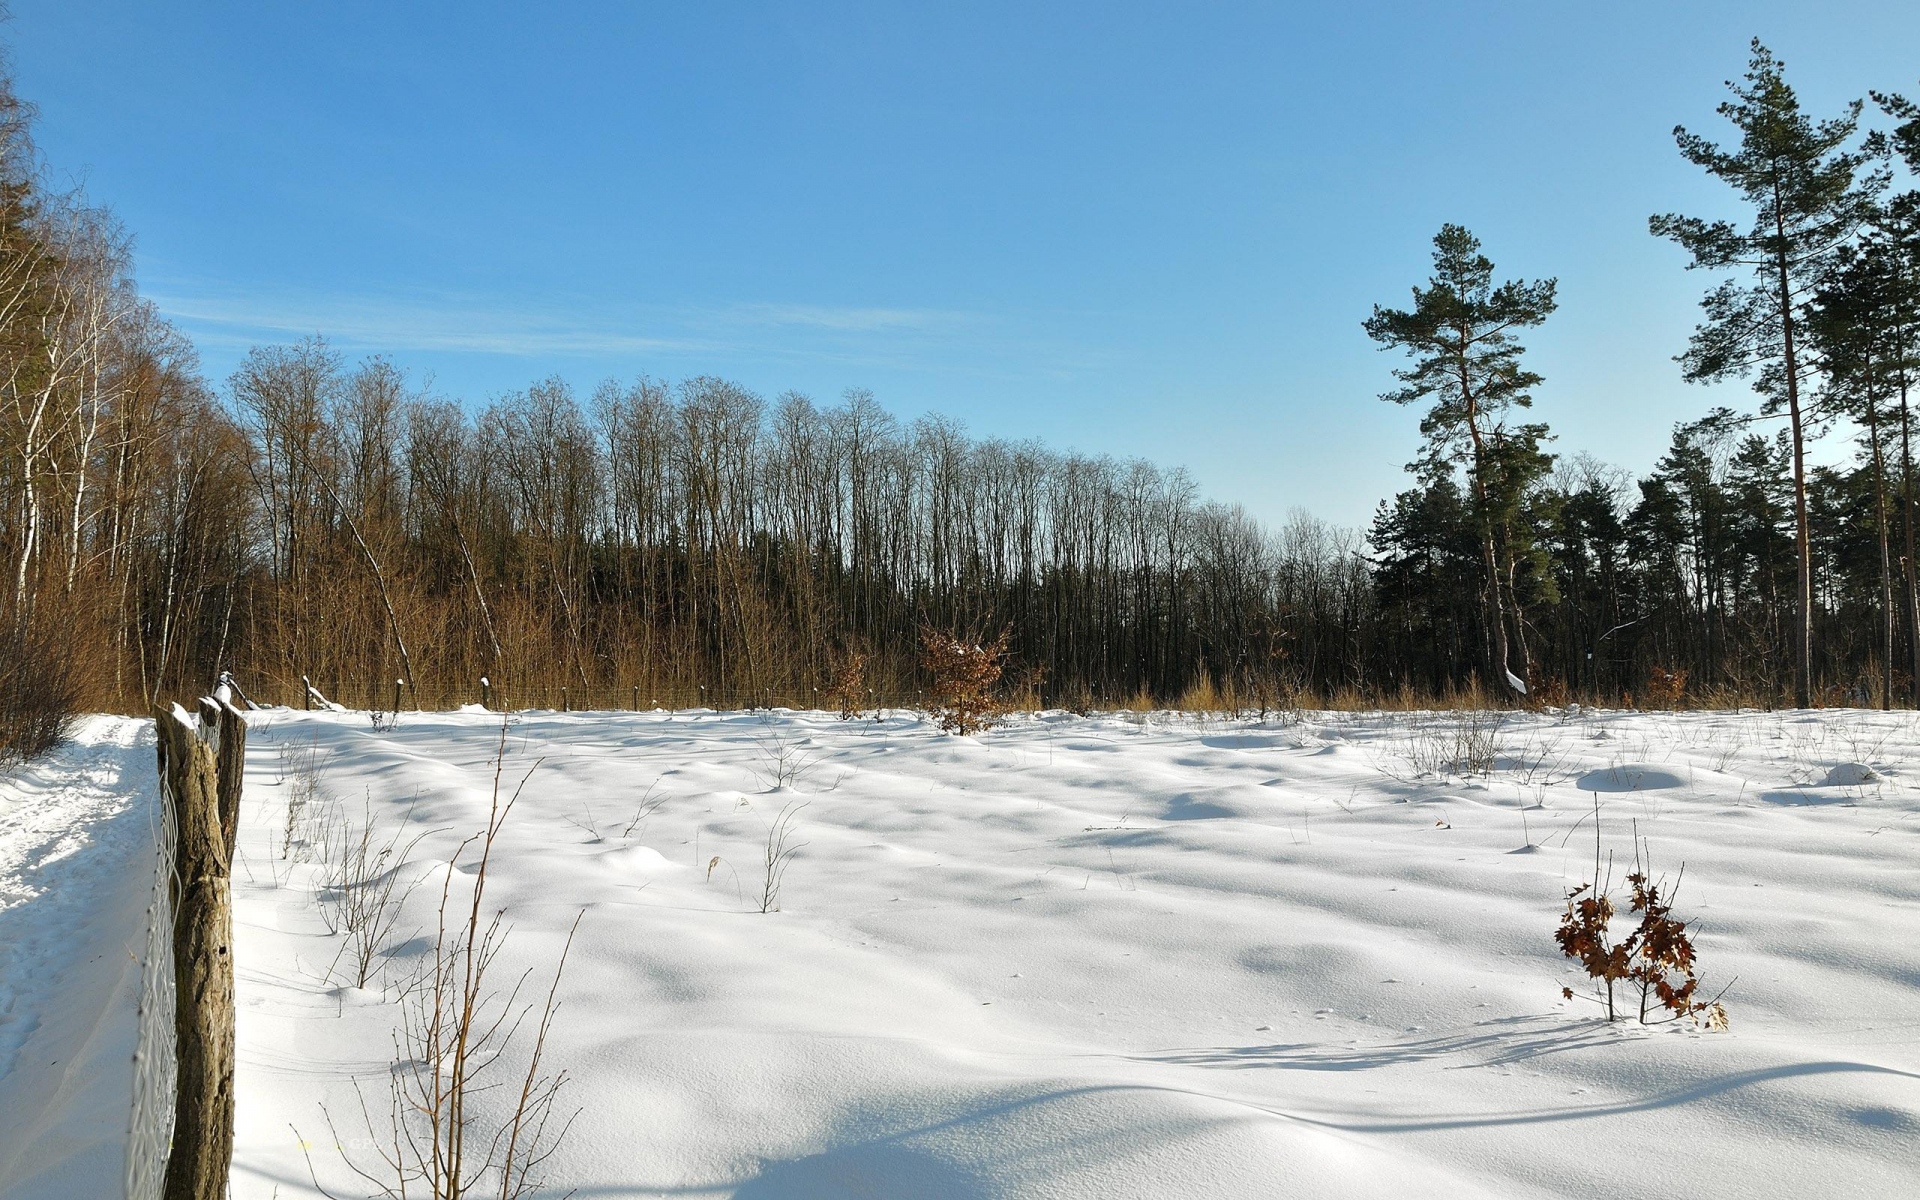 Картинки поле, зима, снег, защита, деревья, небо, лазурное,ясно, тени, лезвия фото и обои на рабочий стол